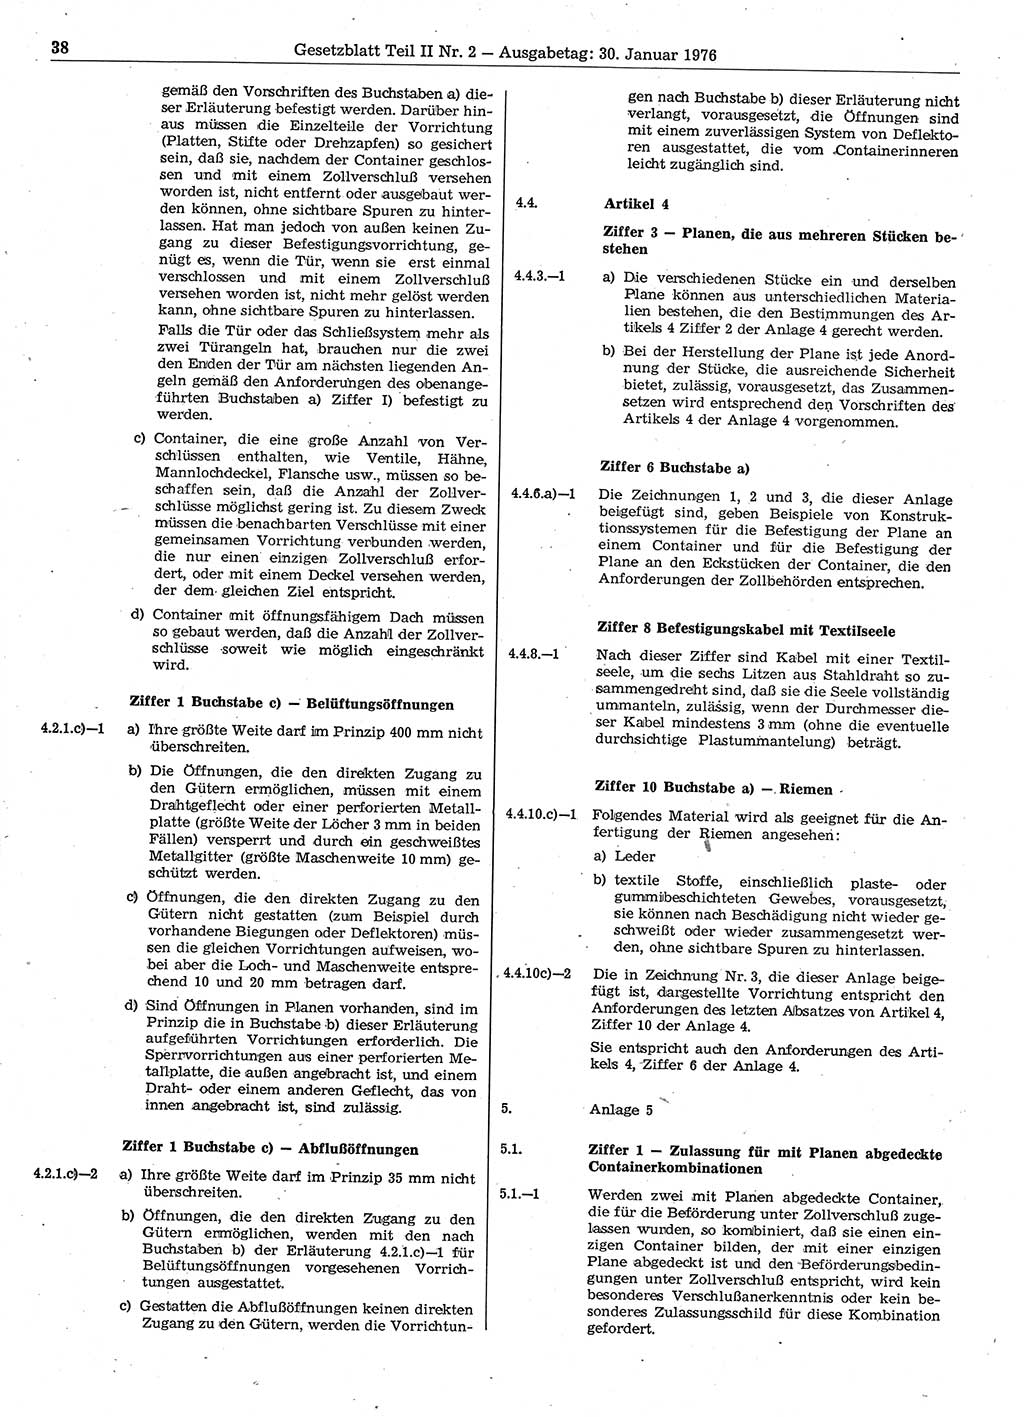 Gesetzblatt (GBl.) der Deutschen Demokratischen Republik (DDR) Teil ⅠⅠ 1976, Seite 38 (GBl. DDR ⅠⅠ 1976, S. 38)